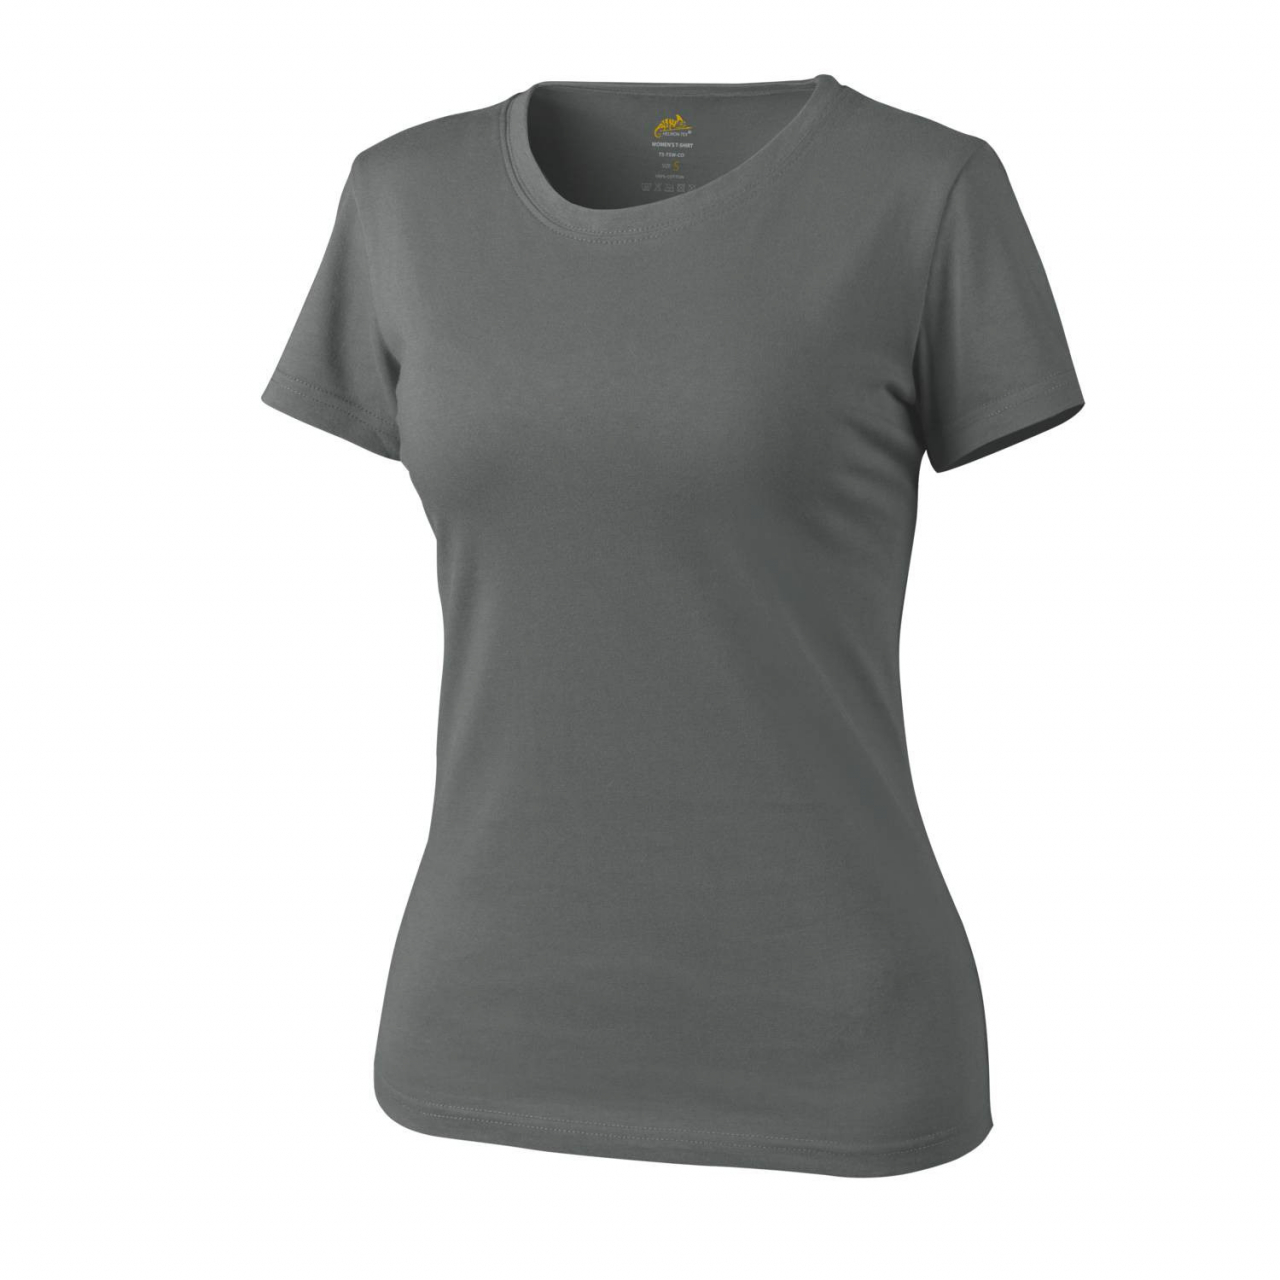 Tričko dámské Helikon Womens Shirt - šedé, XS